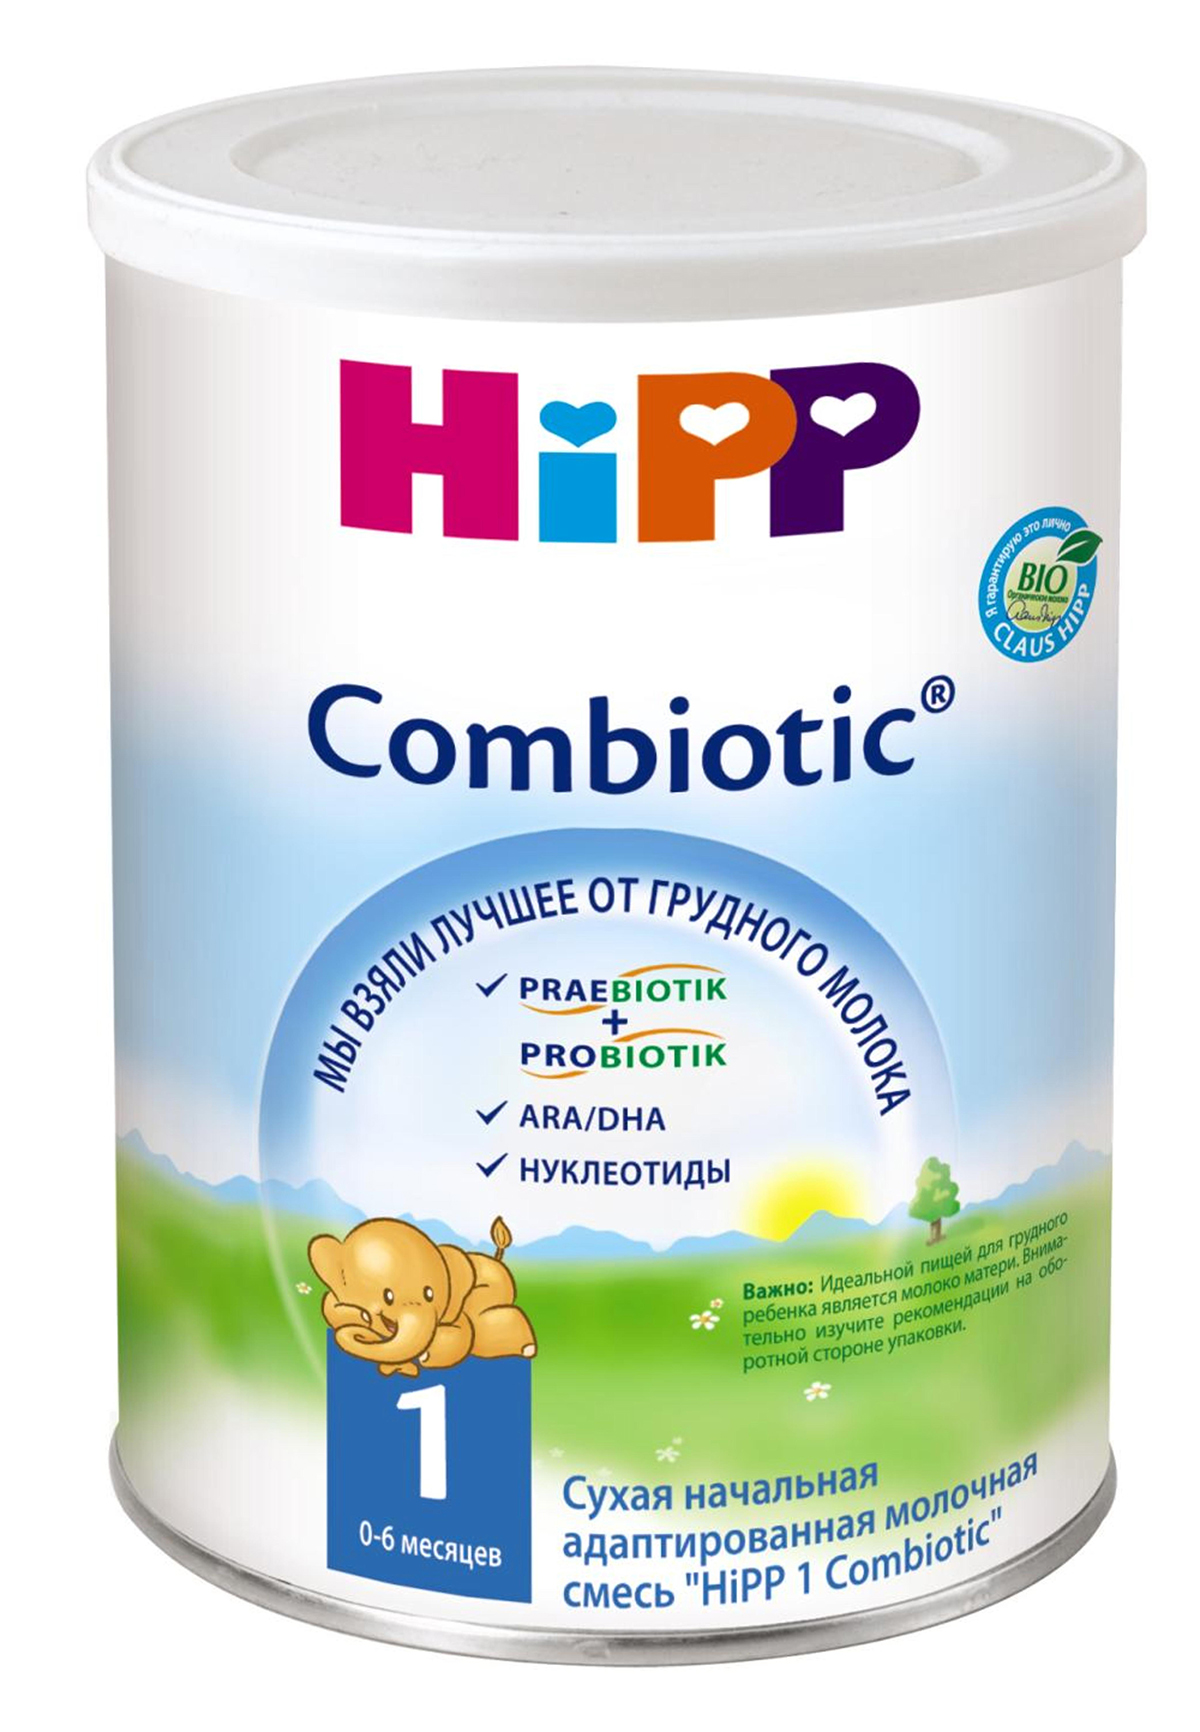 Хорошая смесь с 6 месяцев. Смесь Hipp 2 Combiotic (с 6 месяцев) 800 г. Смесь Hipp ha 2 Combiotic (с 6 месяцев) 500 г. Хипп Комбиотик 1. Хипп смесь Комбиотик 2.